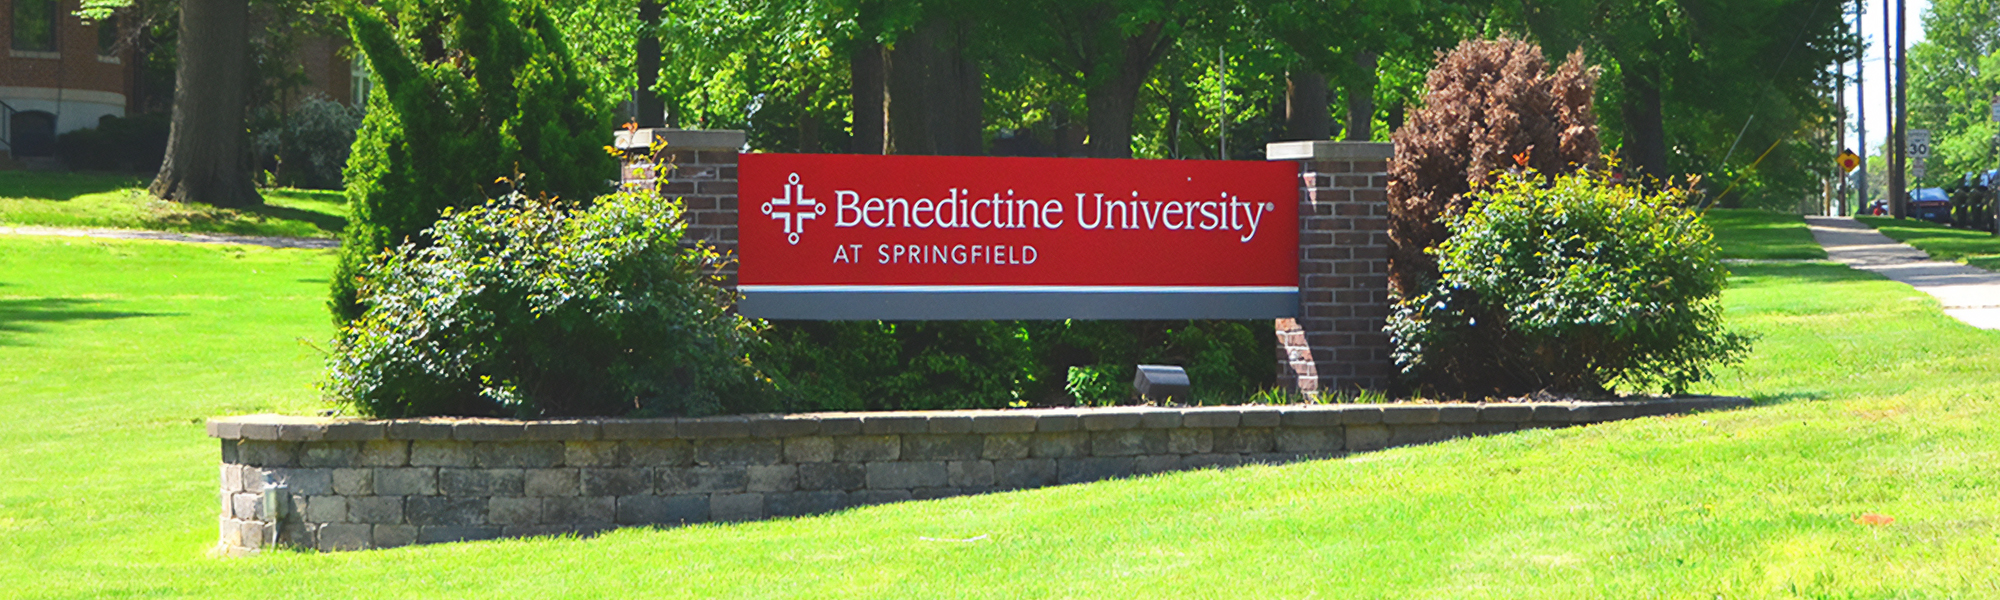 benedictine university signage